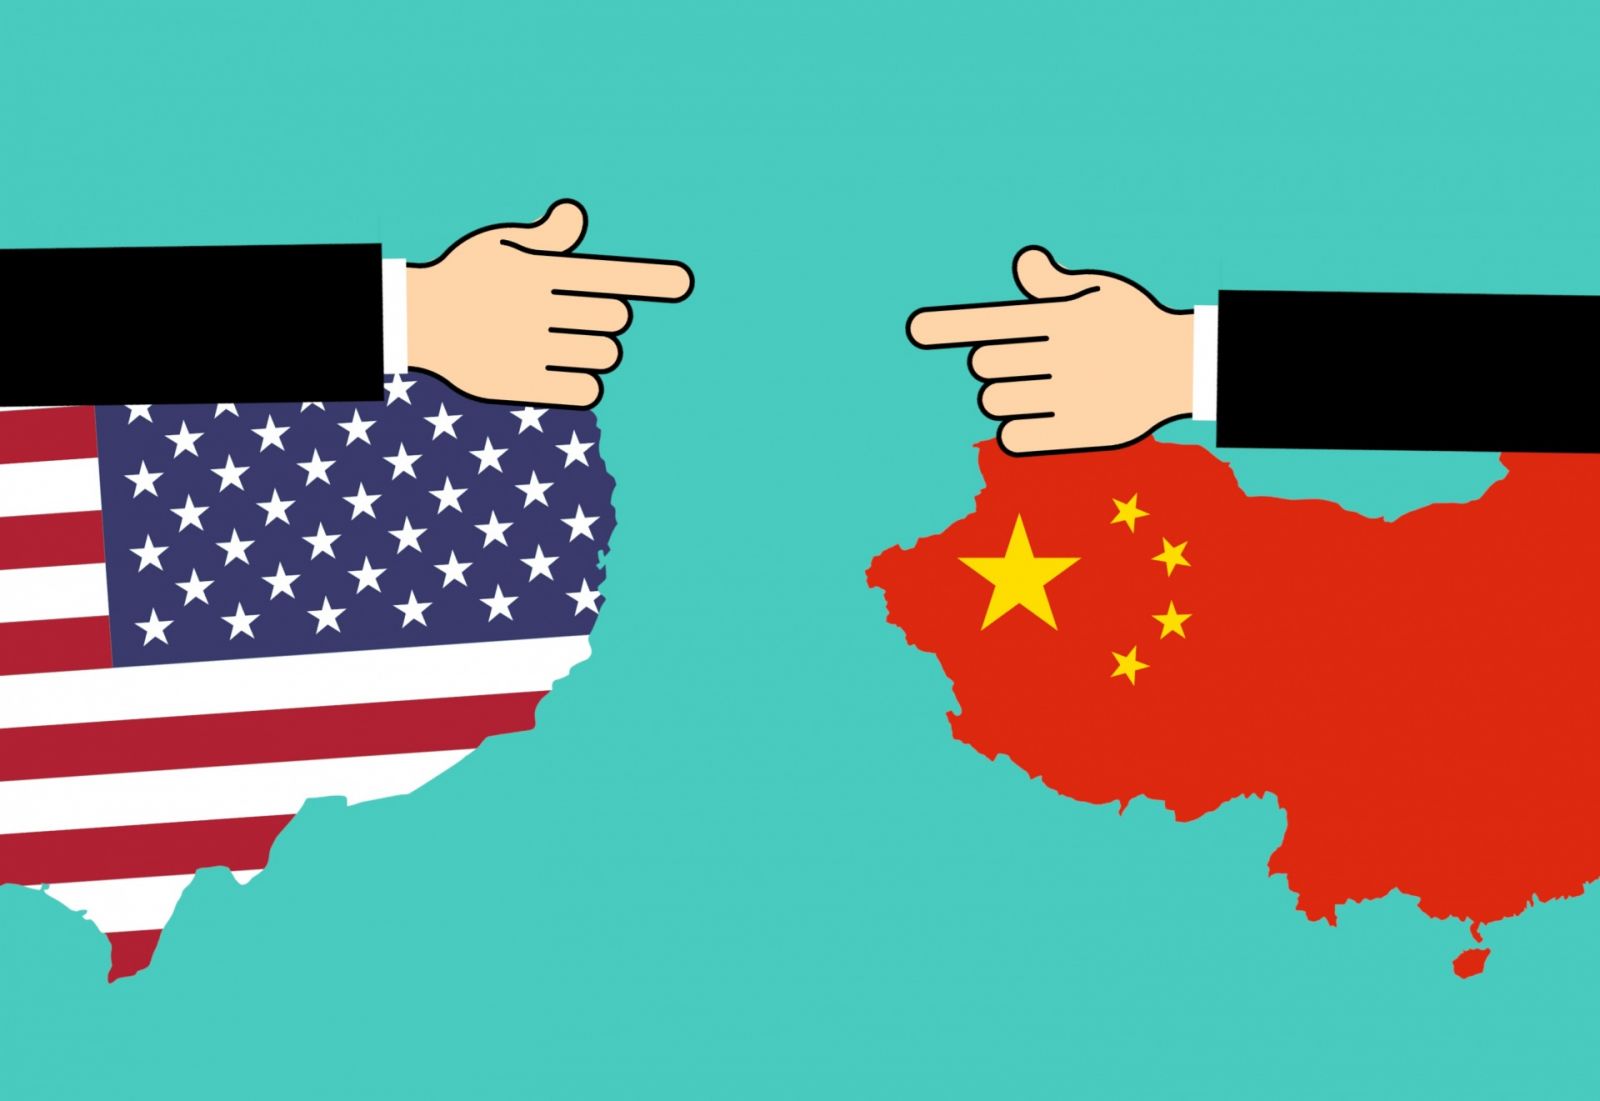 China amenza a empresas de EE.UU., si suspenden operaciones    